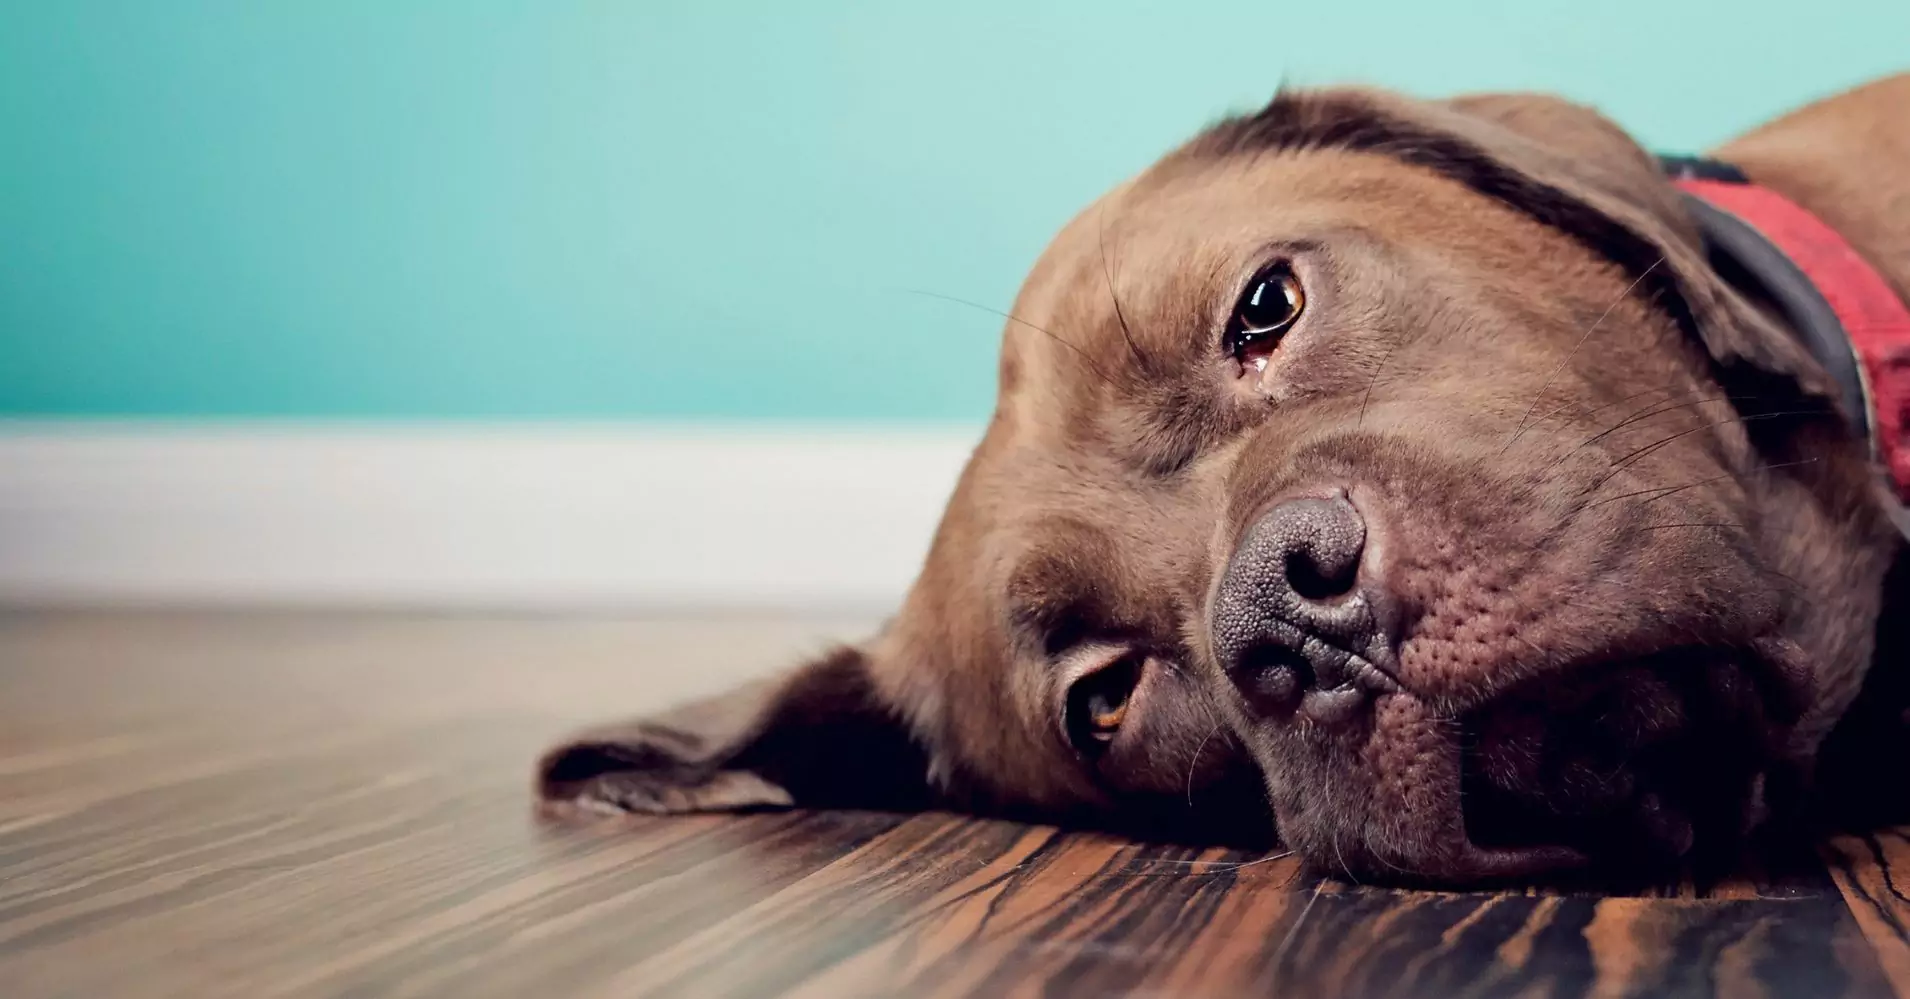 Kunnen honden verdriet voelen?